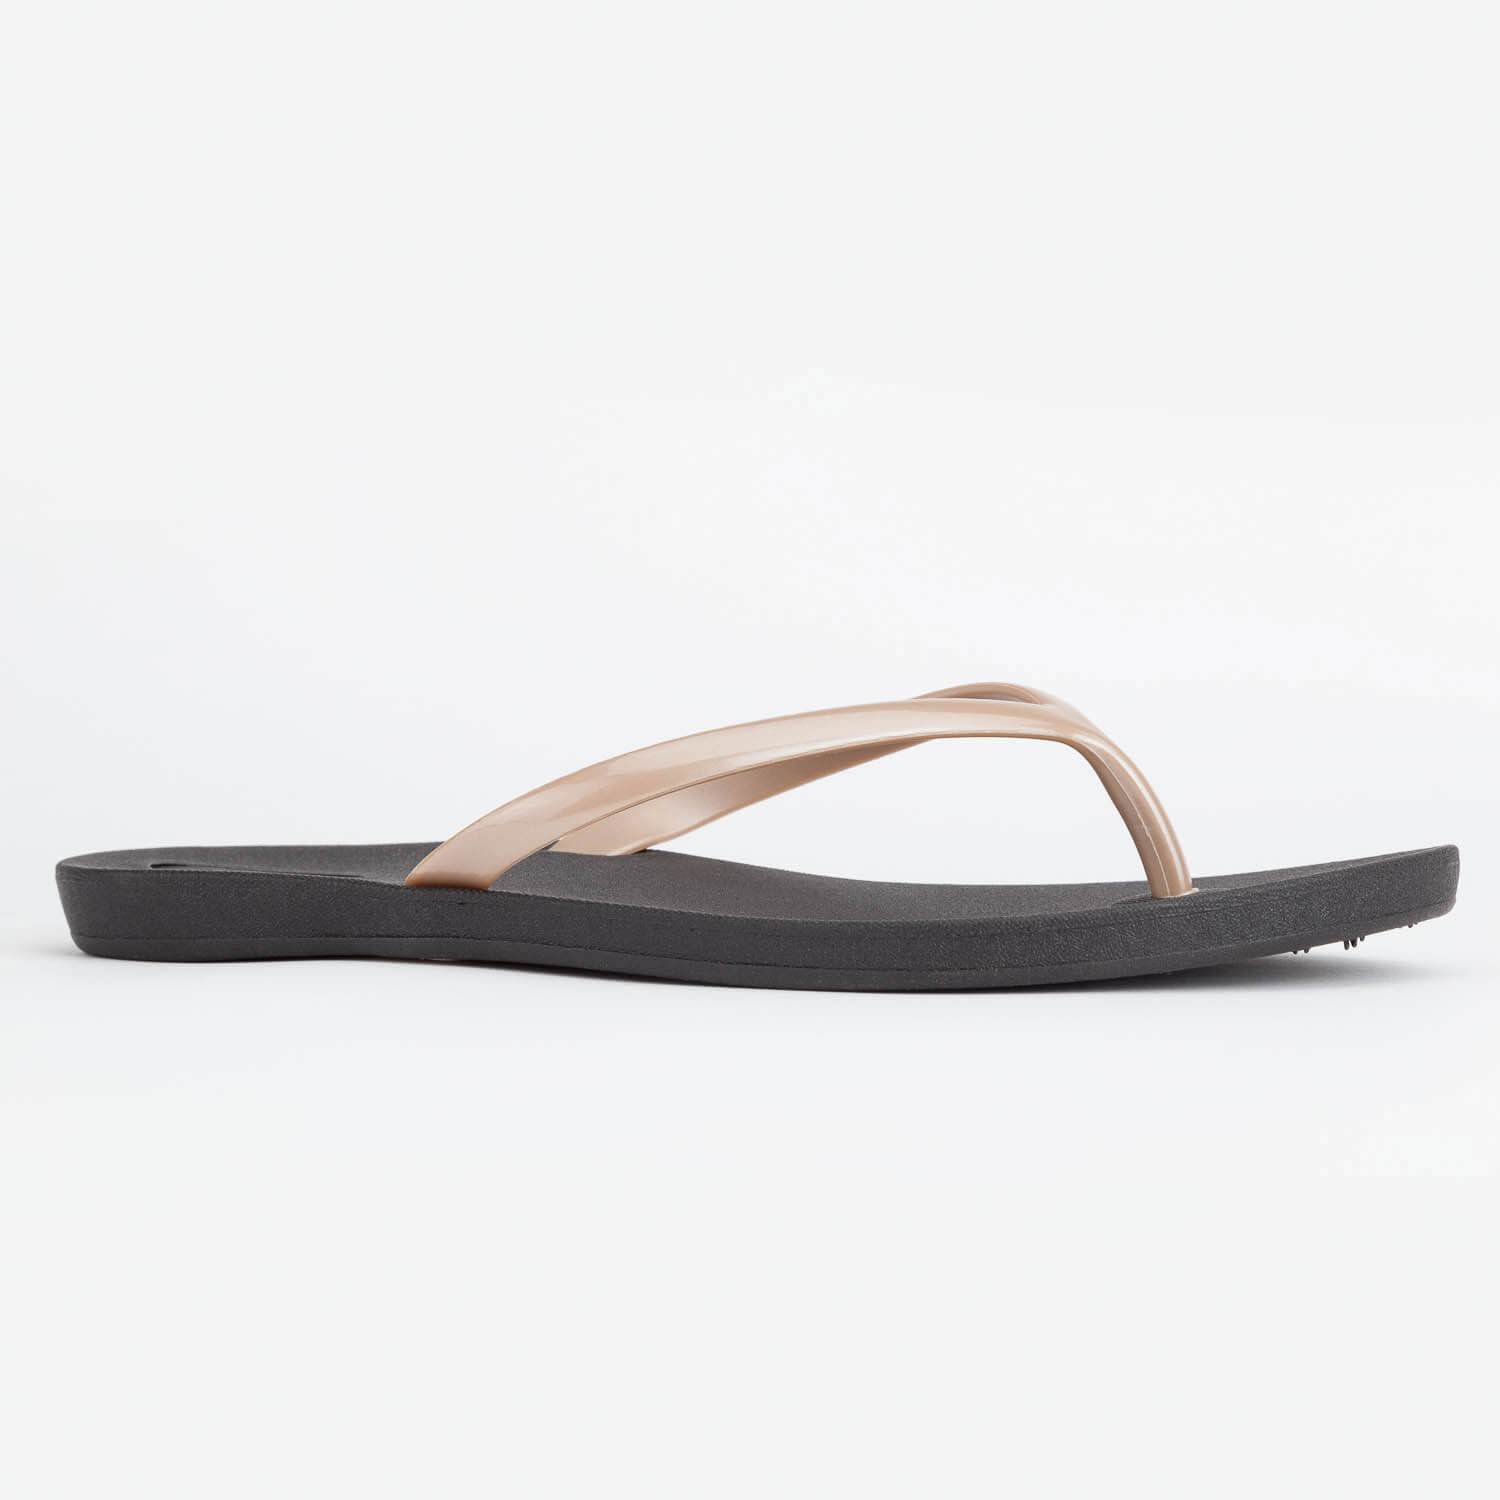 Third Oak Flip Flop Sandals Made in USA Size 10 & 11 - Depop